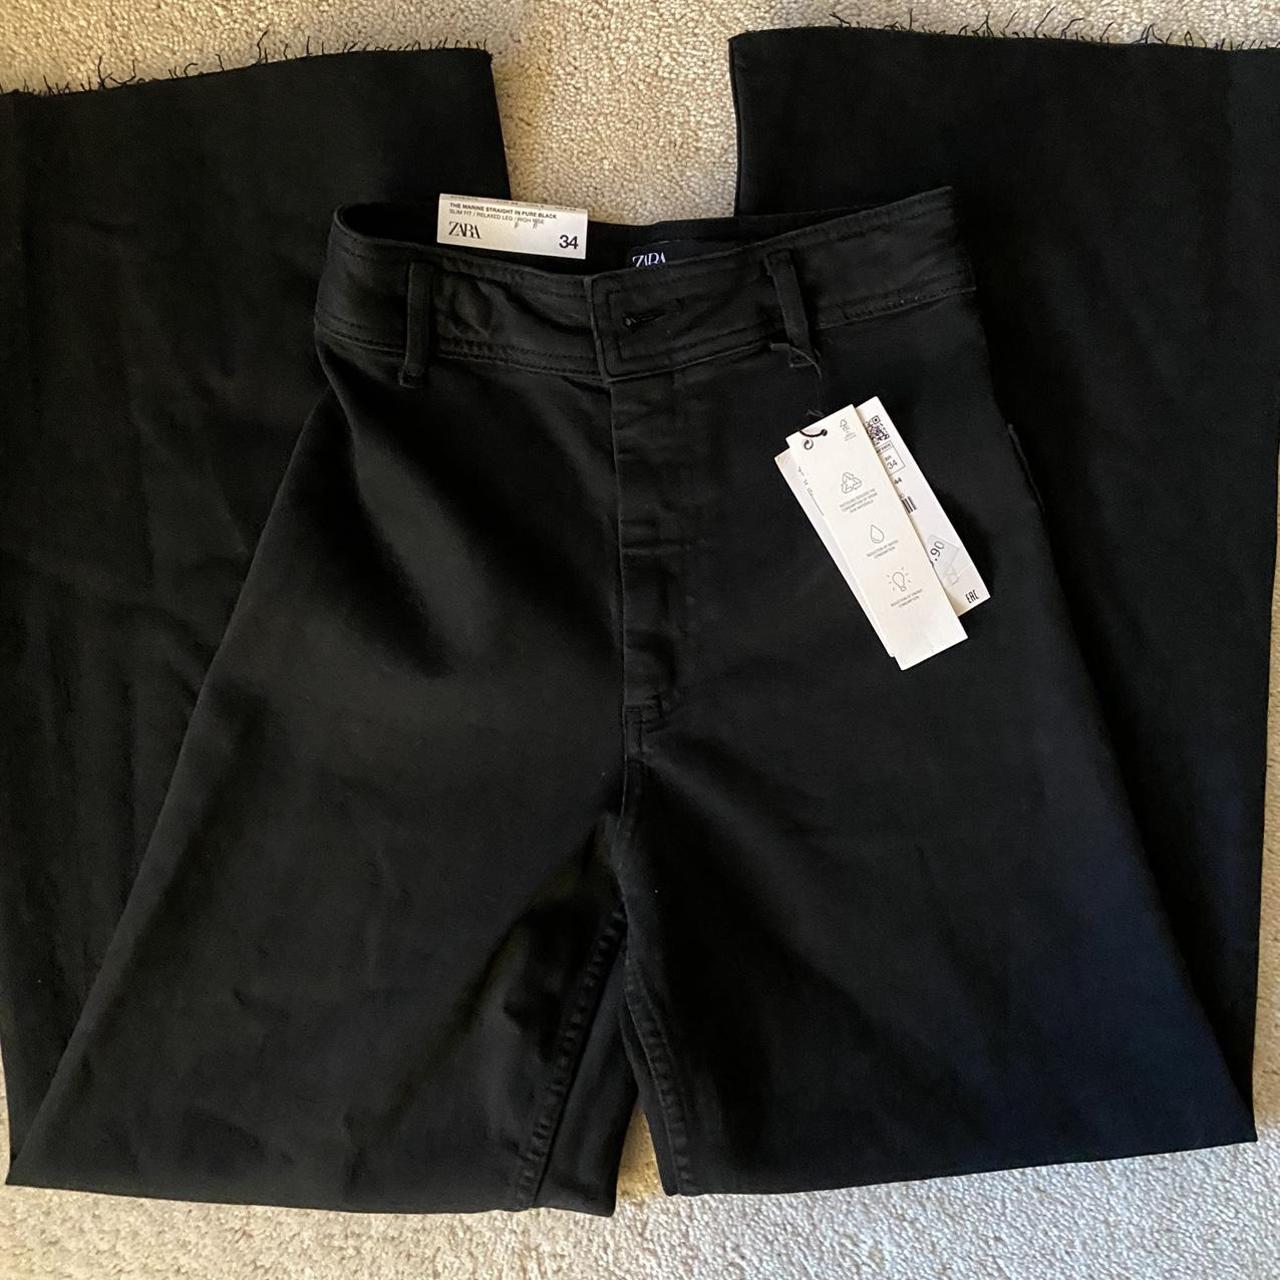 Zara black marine straight jeans. Size 2. New with... - Depop